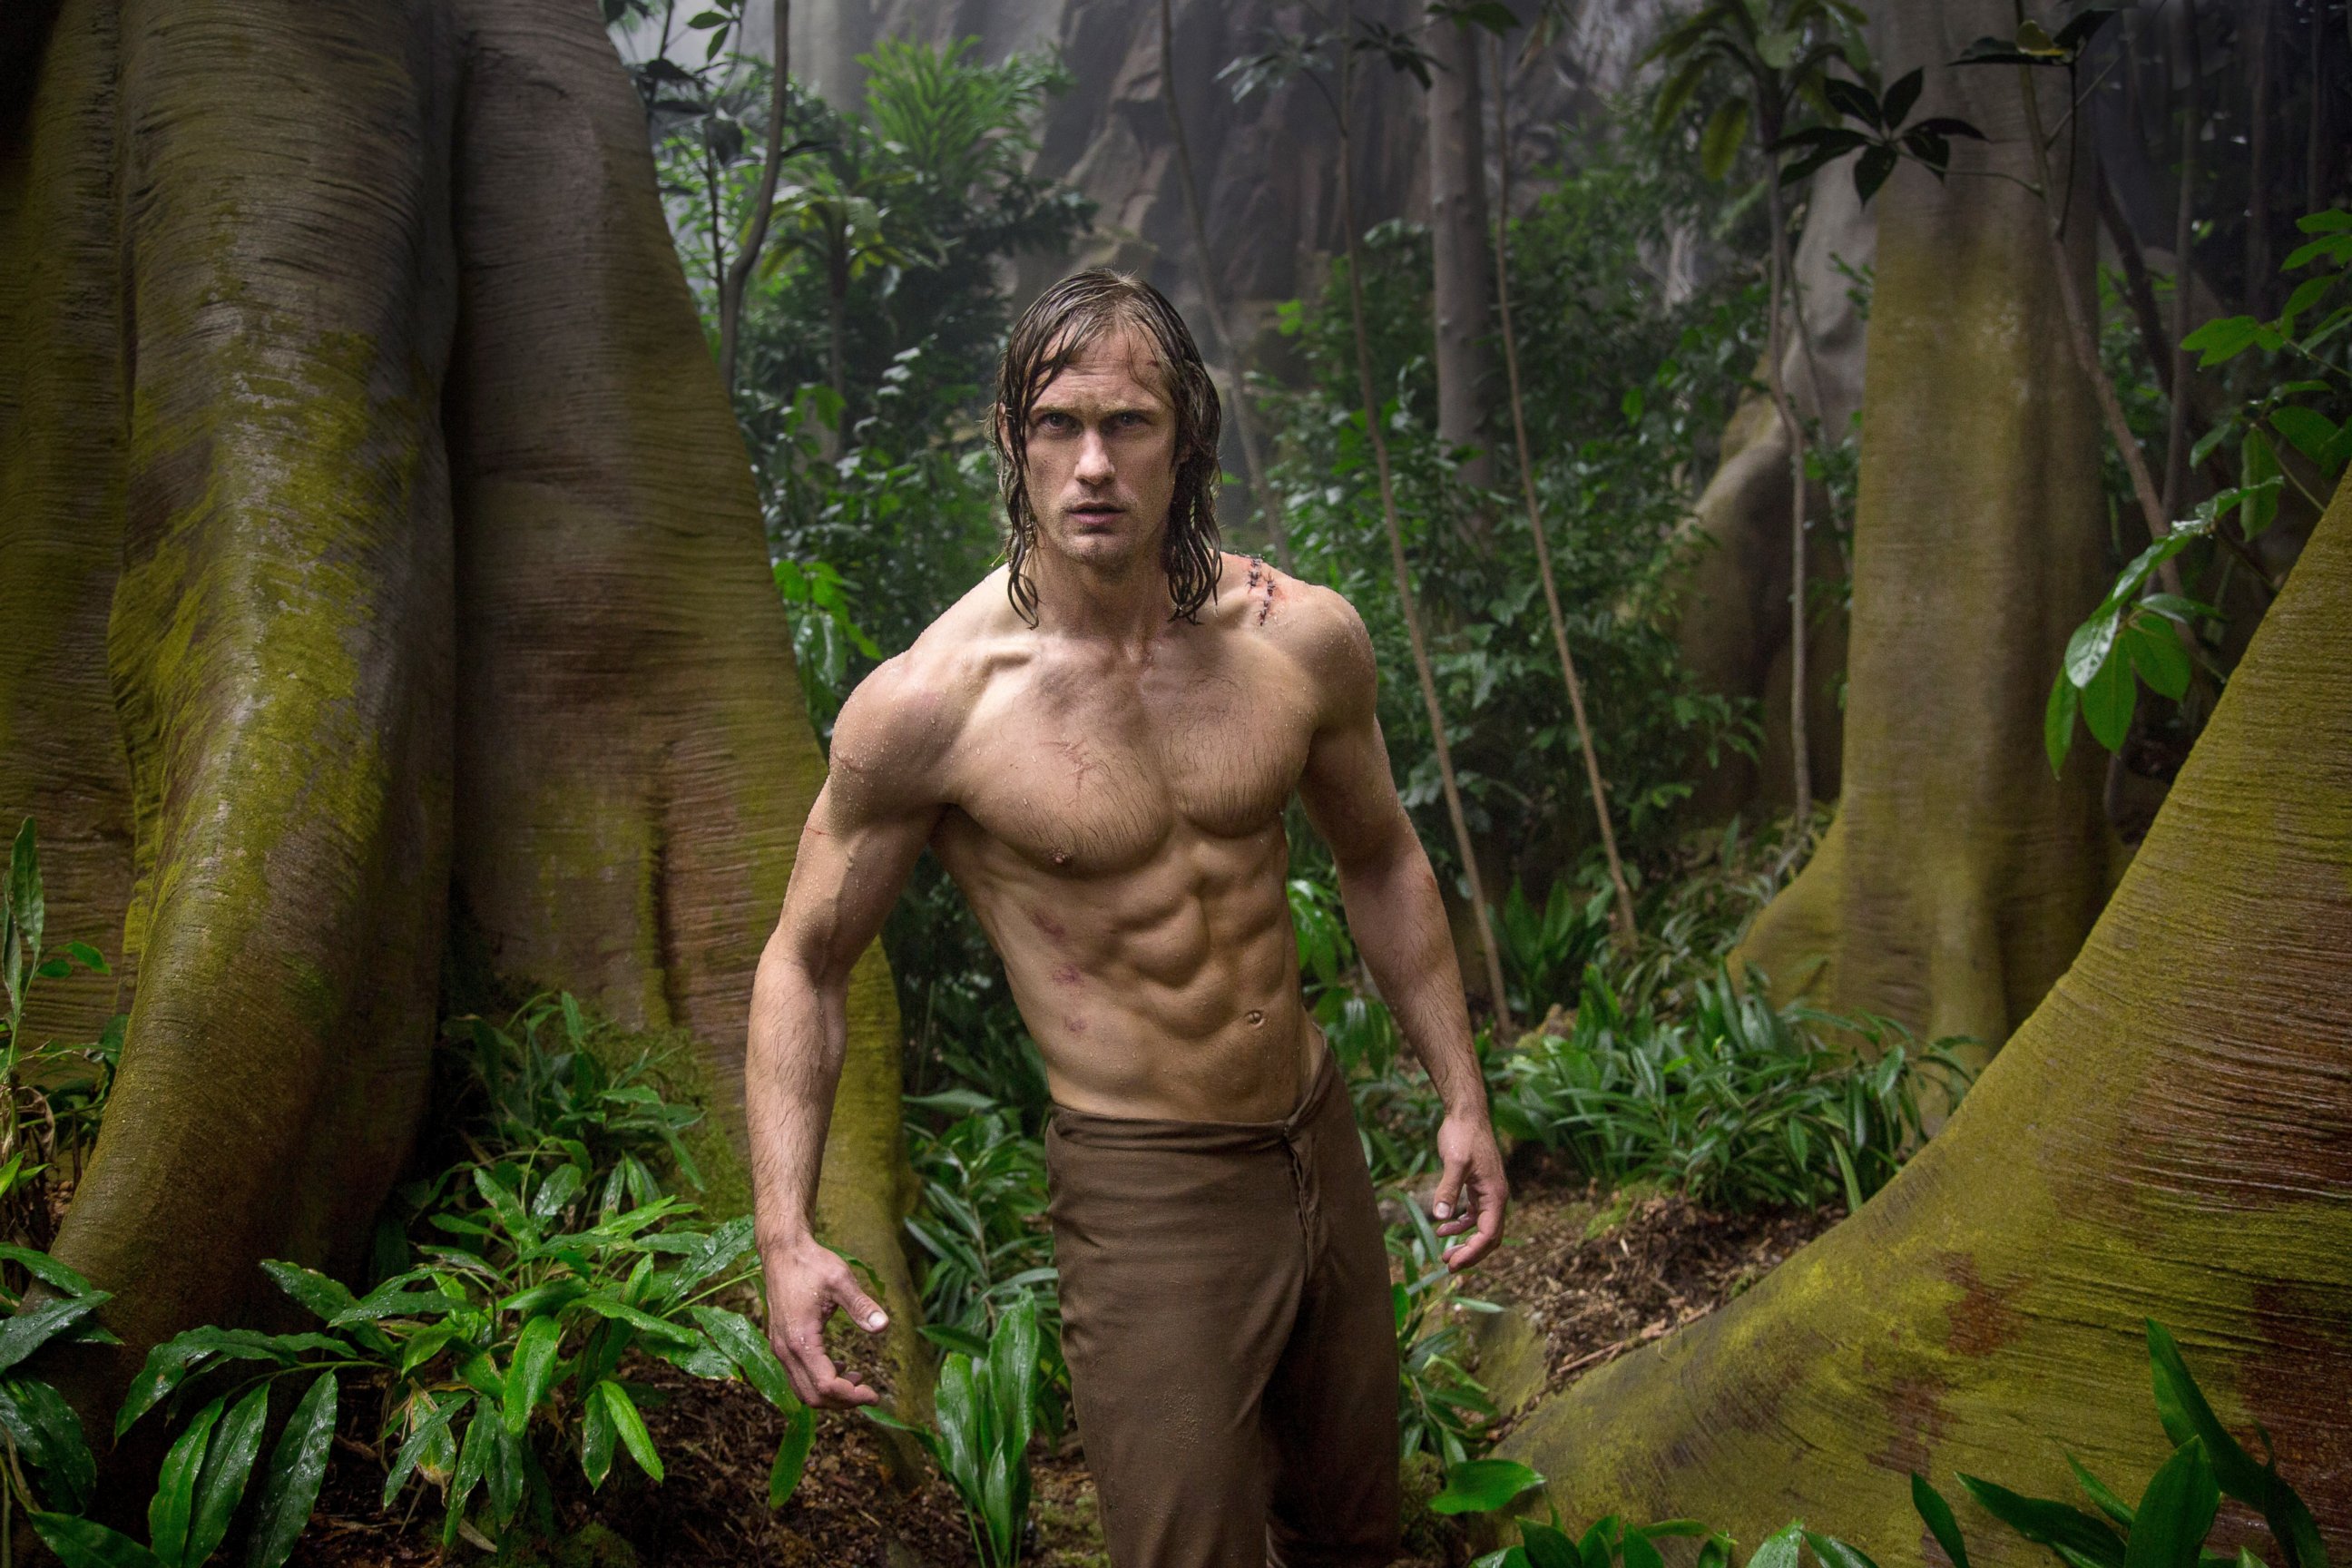 PHOTO: Alexander Skarsgard in a scene from "Tarzan."